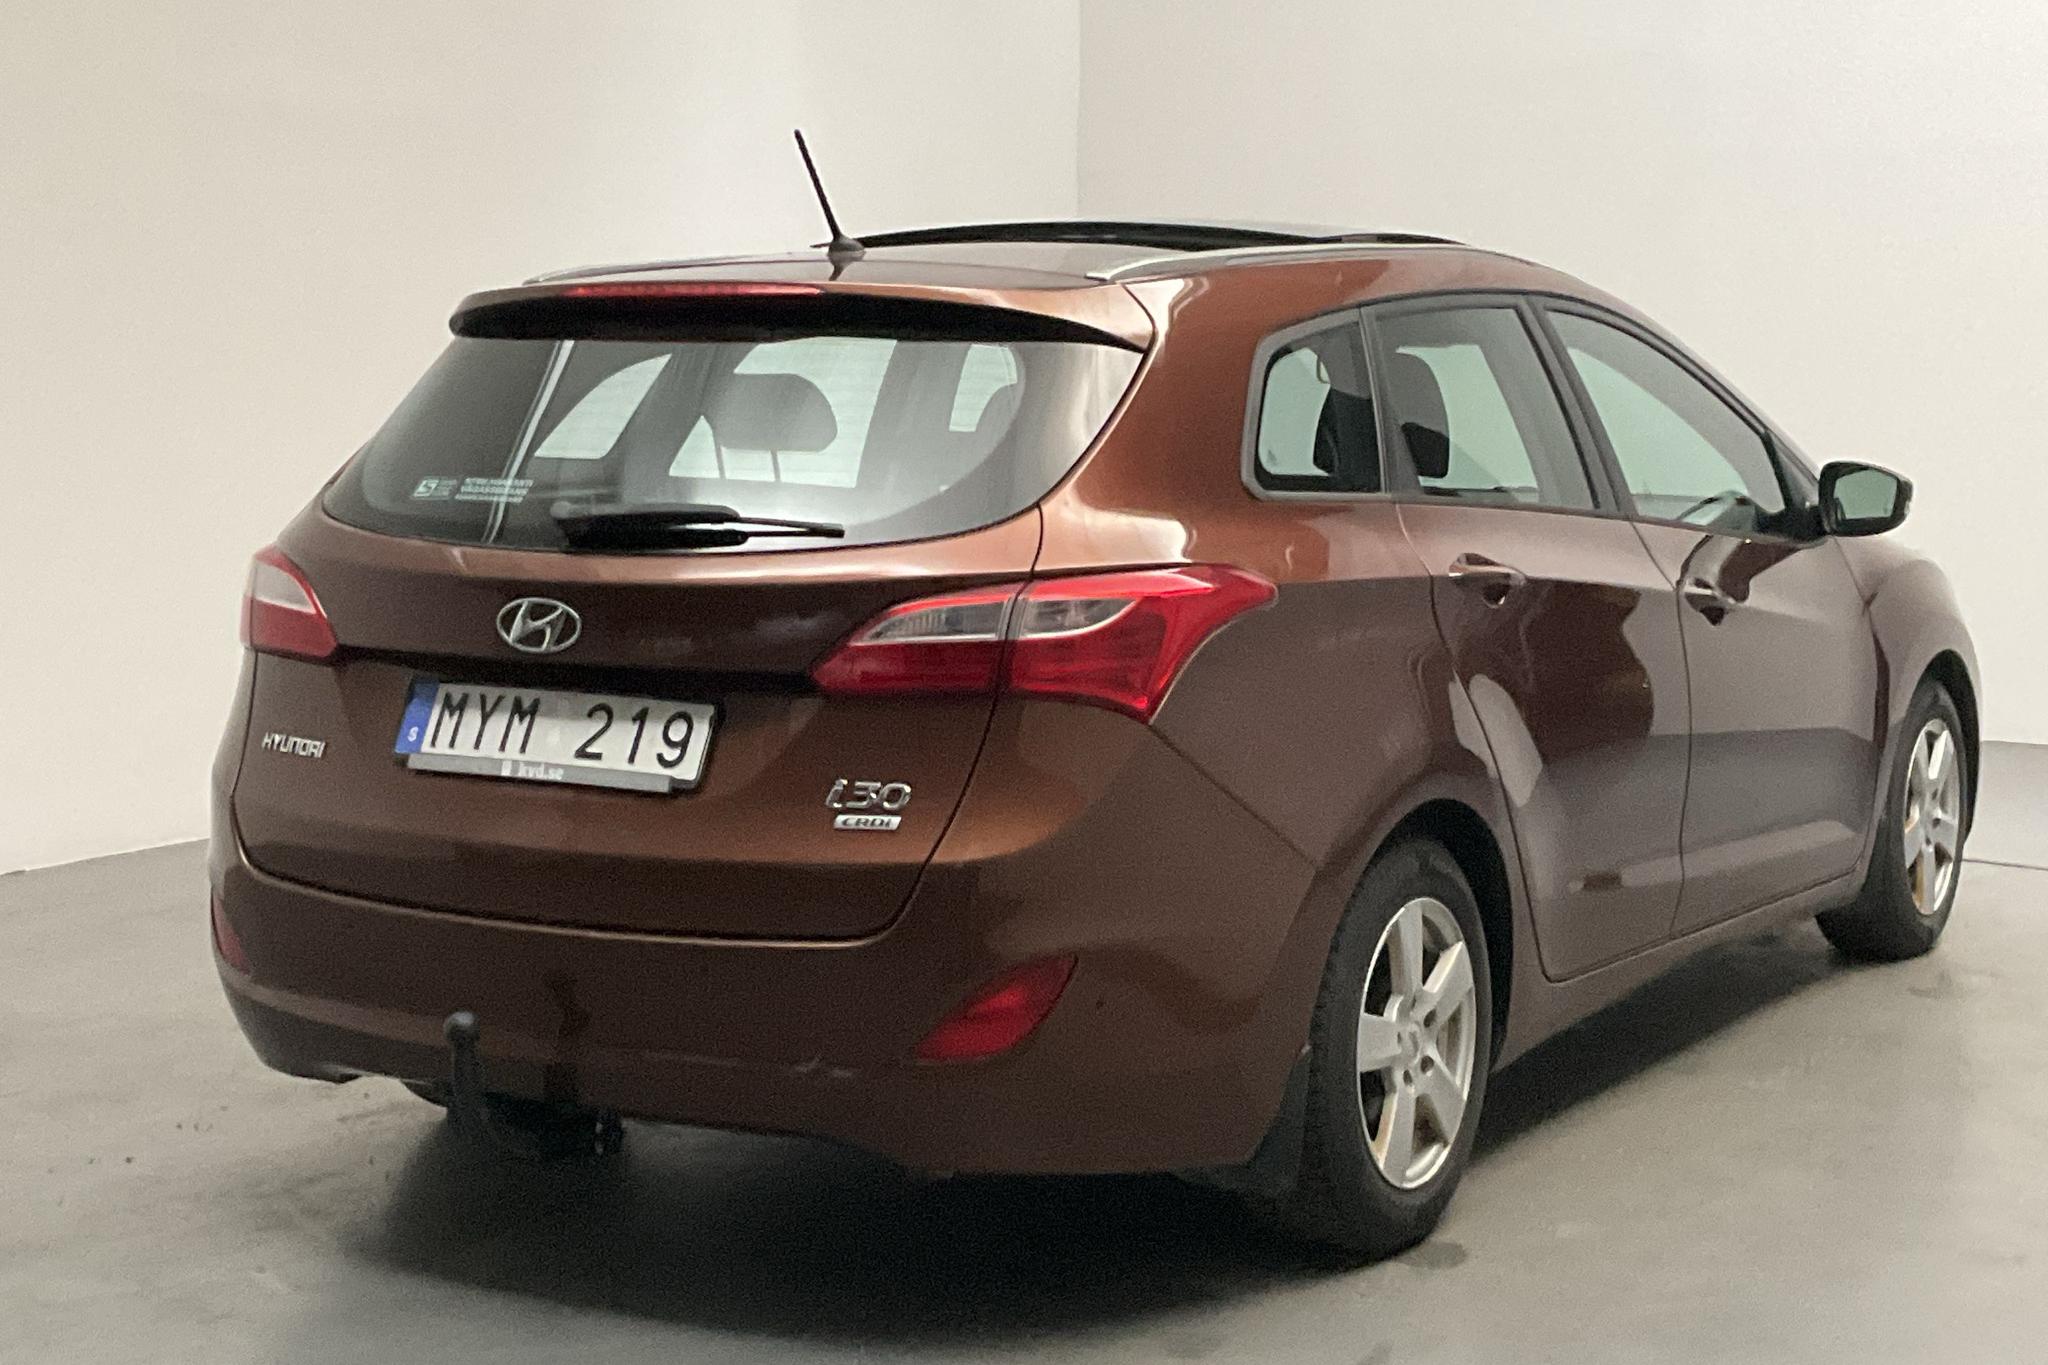 Hyundai i30 1.6 CRDi Kombi (110hk) - 225 410 km - Manual - brown - 2013